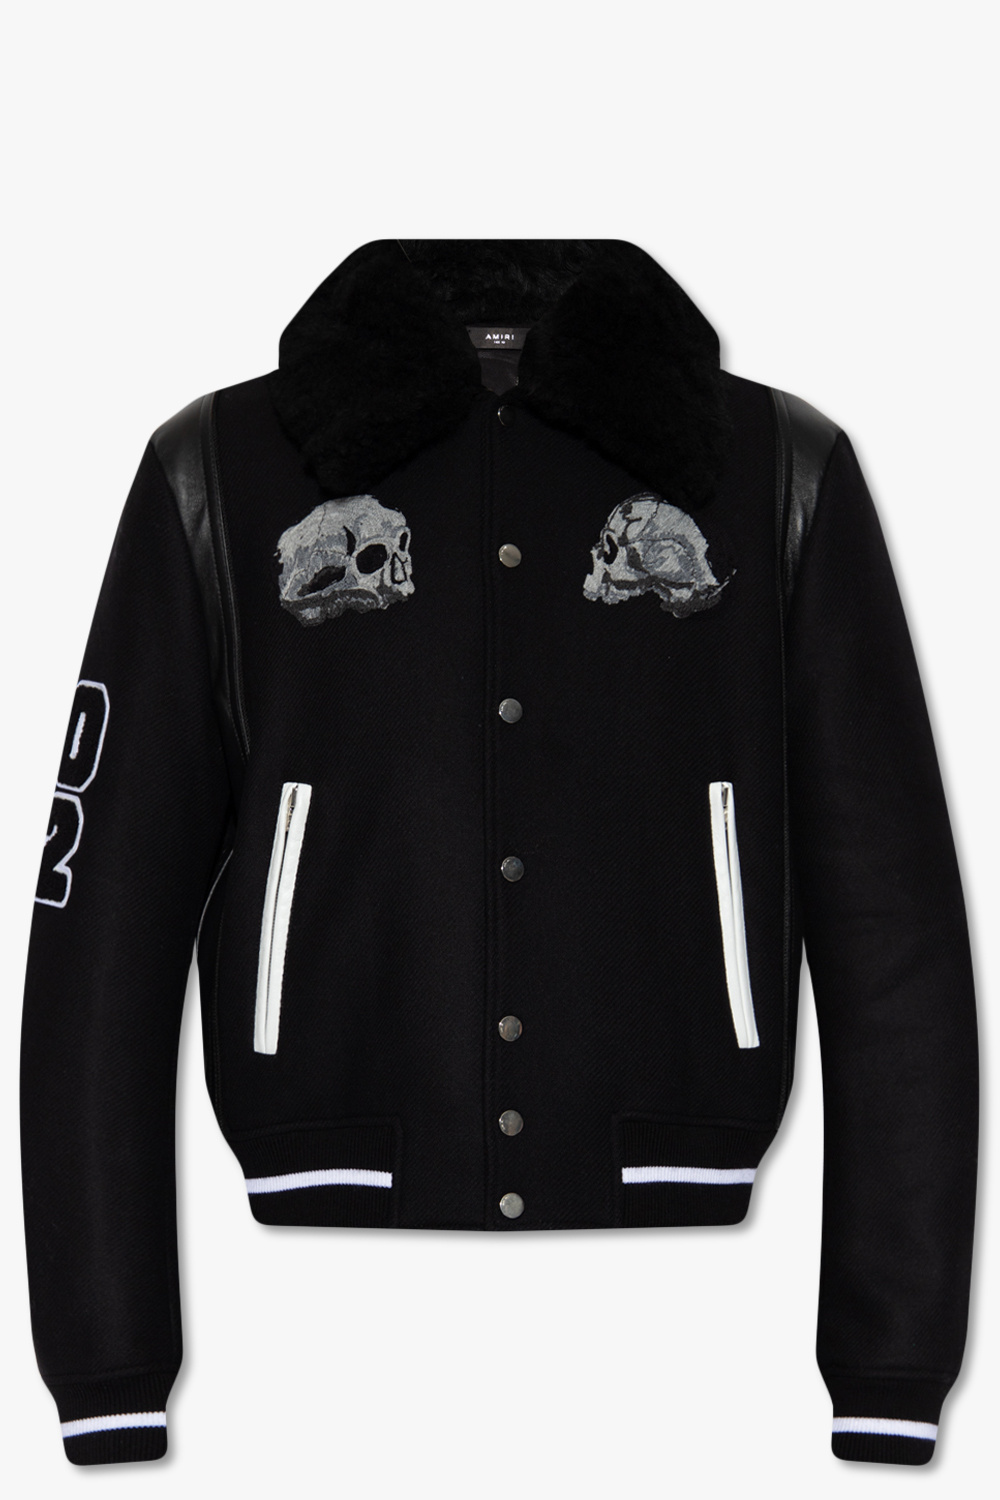 Louis Vuitton Denim Effect Leather Jacket with 3D Pocket, Black, 54